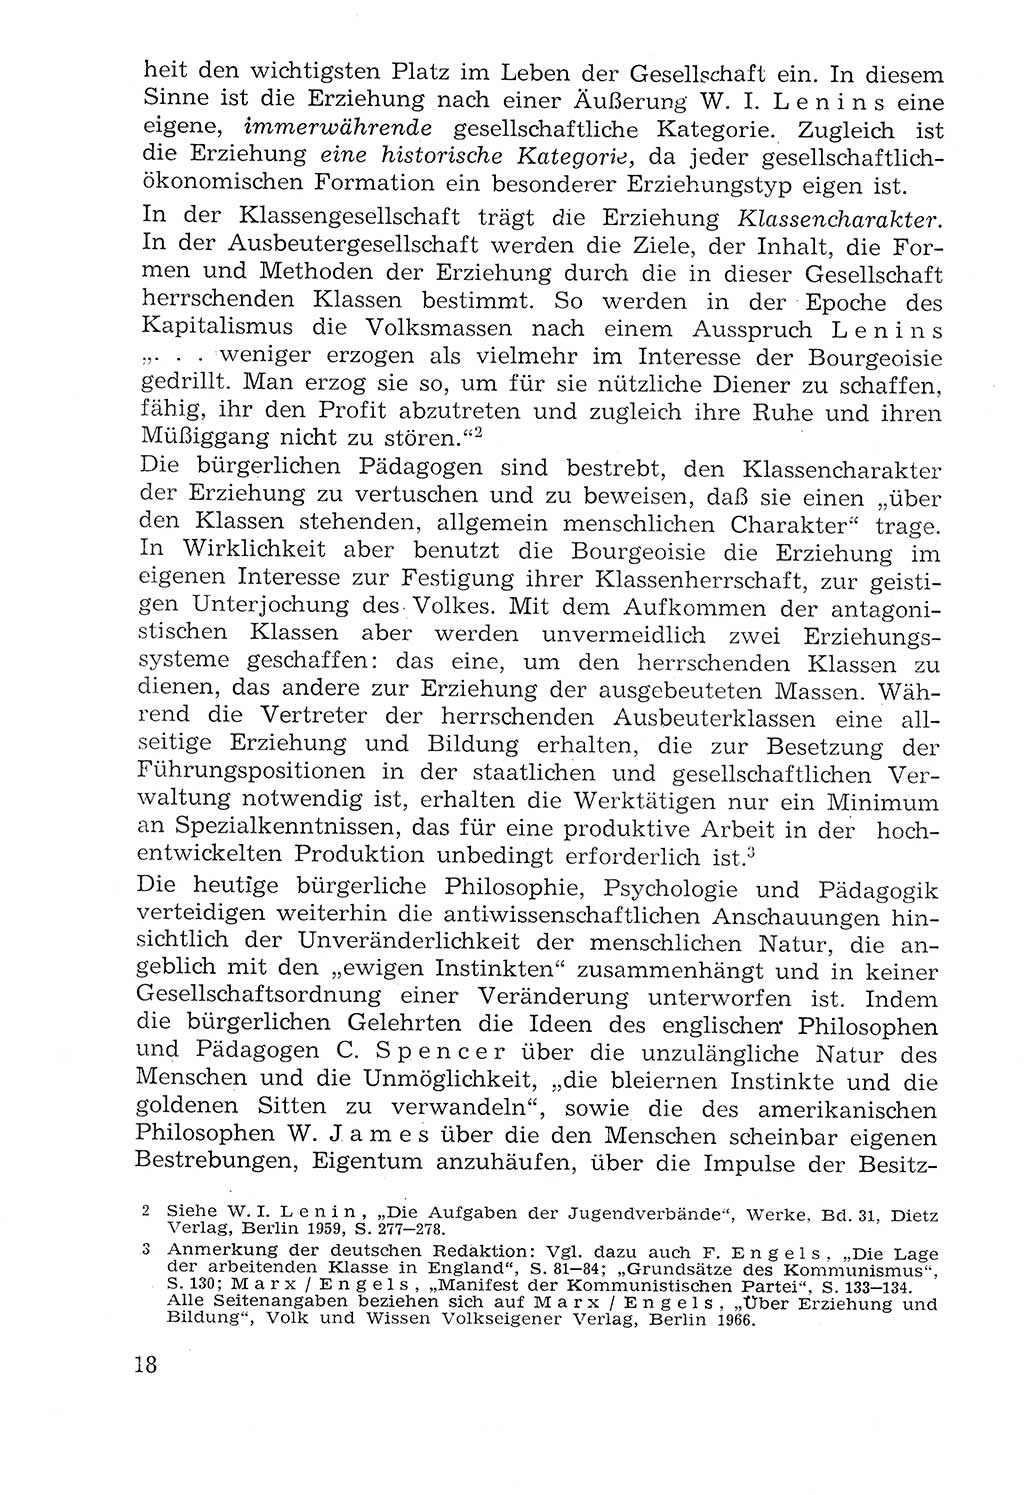 Lehrbuch der Strafvollzugspädagogik [Deutsche Demokratische Republik (DDR)] 1969, Seite 18 (Lb. SV-Pd. DDR 1969, S. 18)